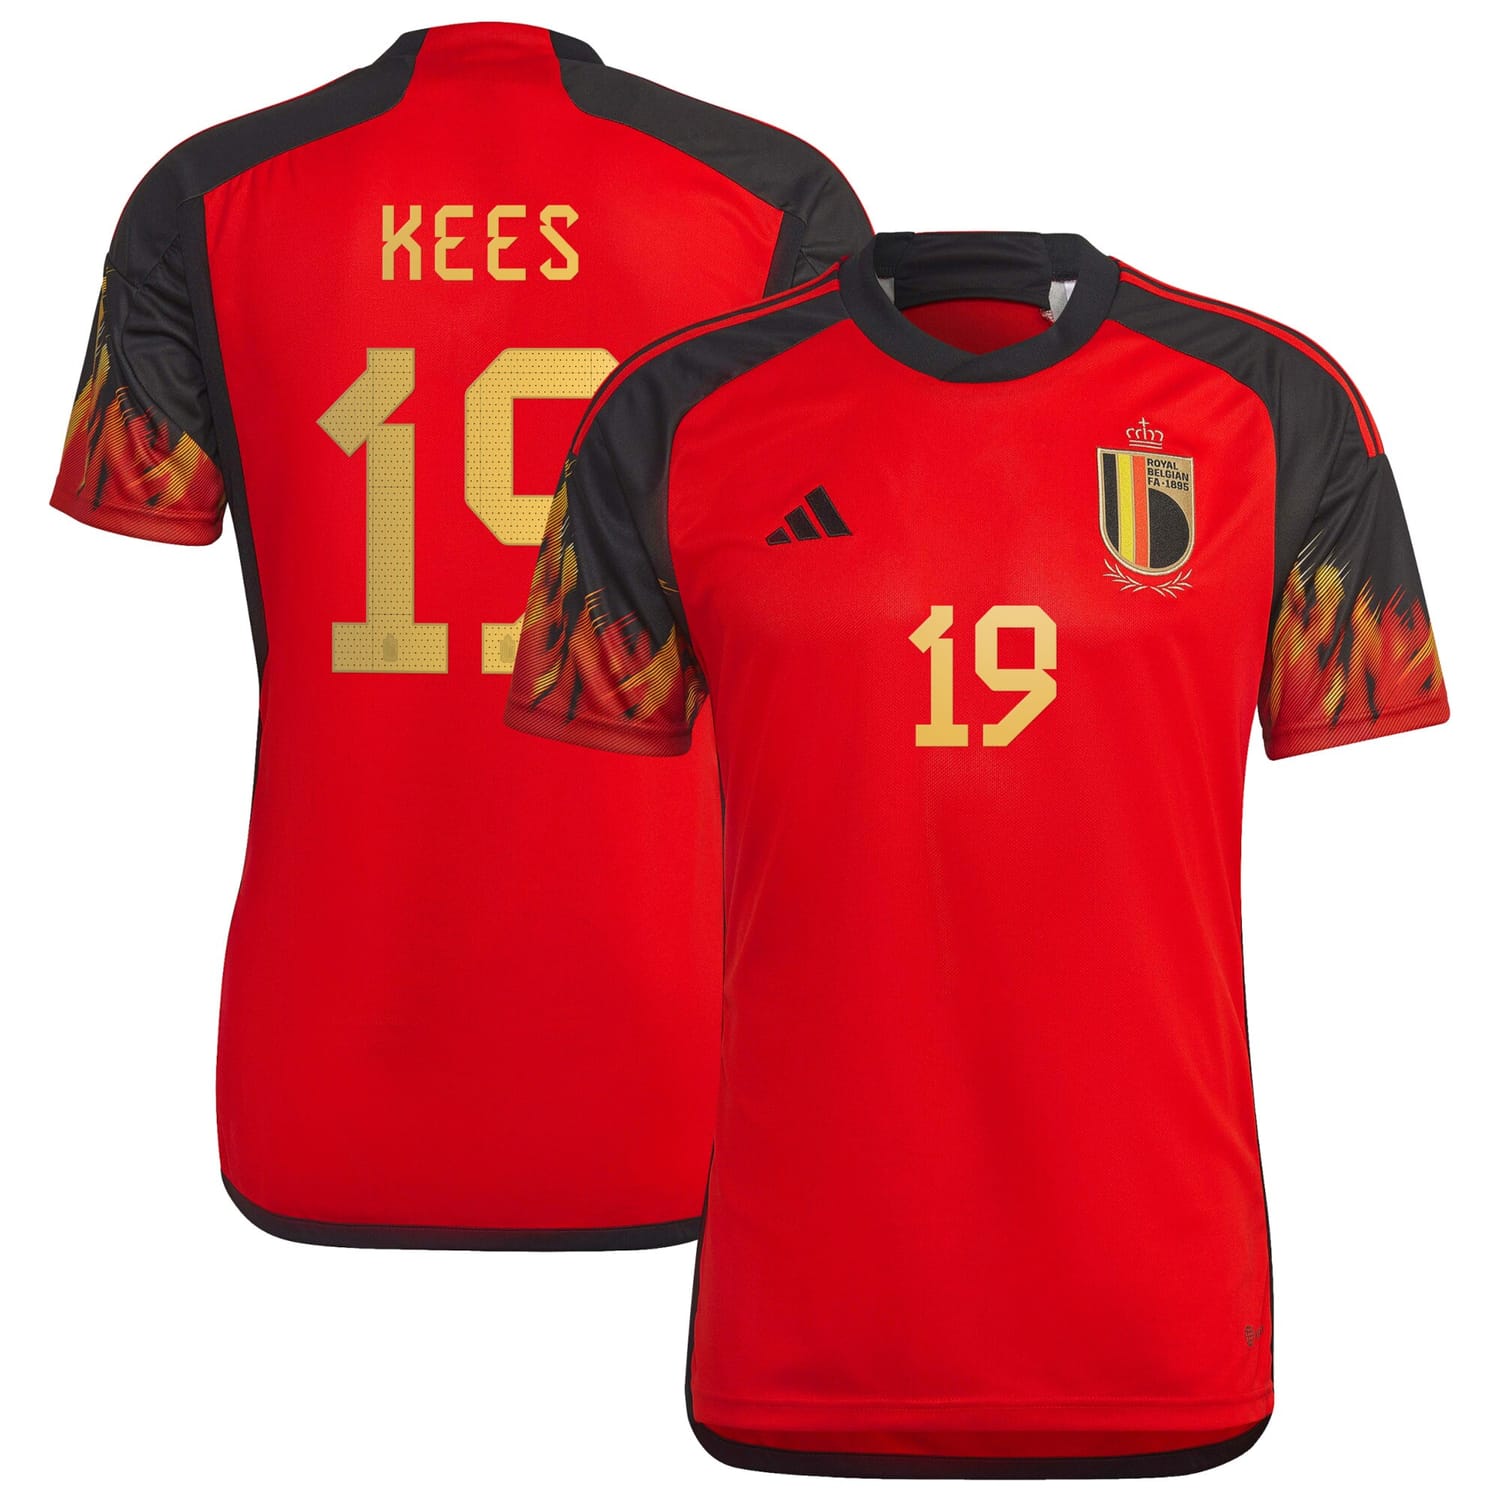 Belgium National Team Home Jersey Shirt 2022 player Sari Kees 19 printing for Men